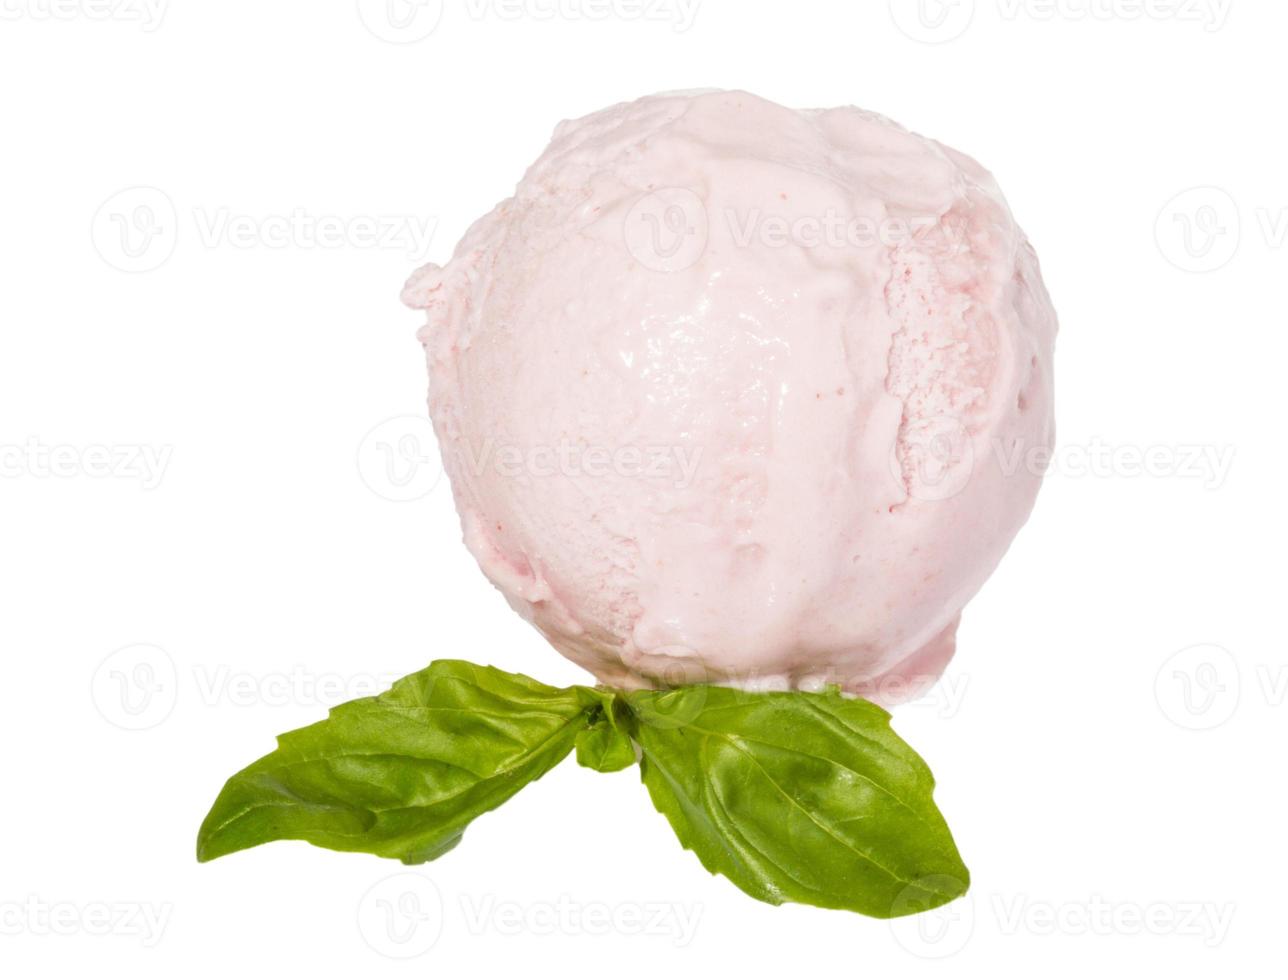 colher de sorvete de morango de cima no fundo branco com folha de hortelã foto